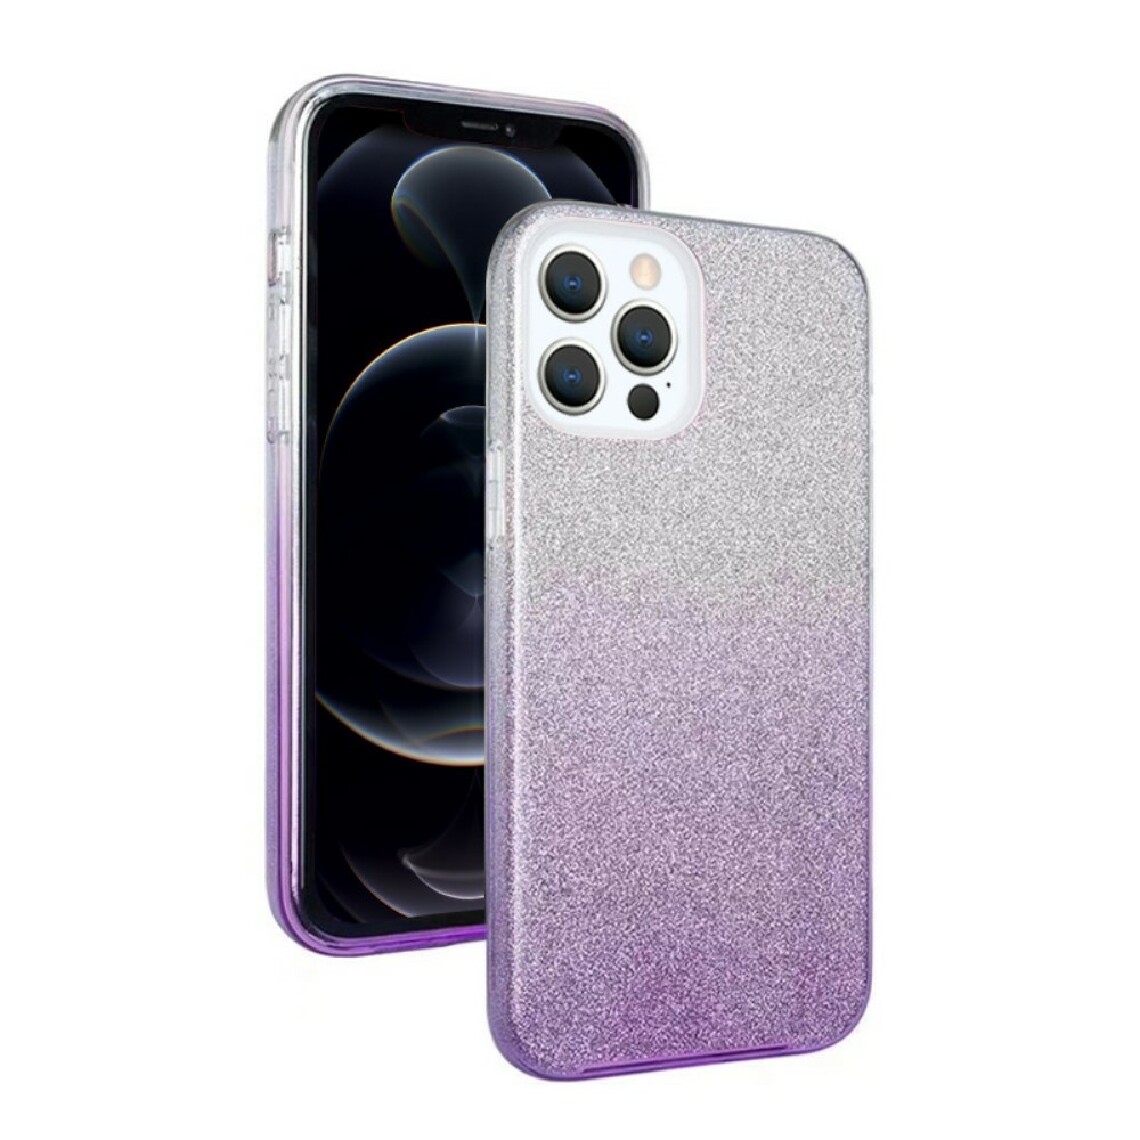 Nxe - Coque en TPU Papier poudre pailleté dégradé 3 en 1 violet pour votre Apple iPhone 12 Pro Max - Coque, étui smartphone